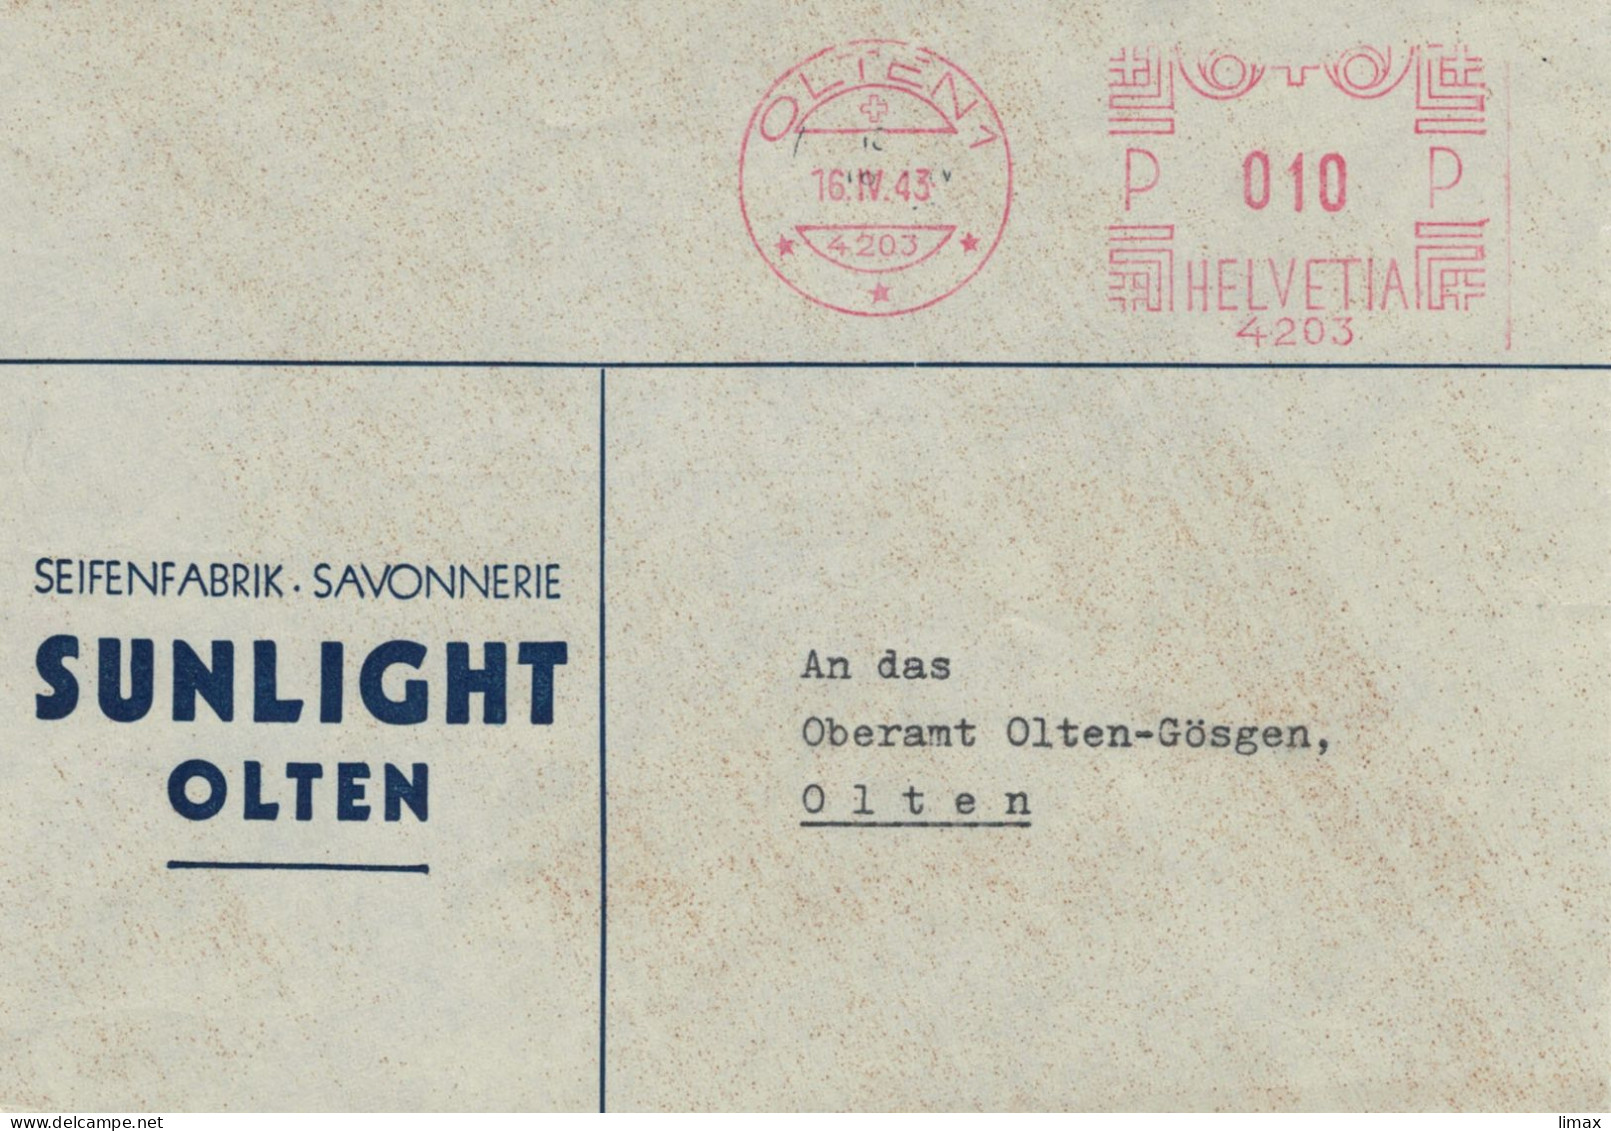 Seifenfabrik Savonnerie Sunlight Olten 1943 No. 4203 - Ortsbrief - Affrancature Meccaniche